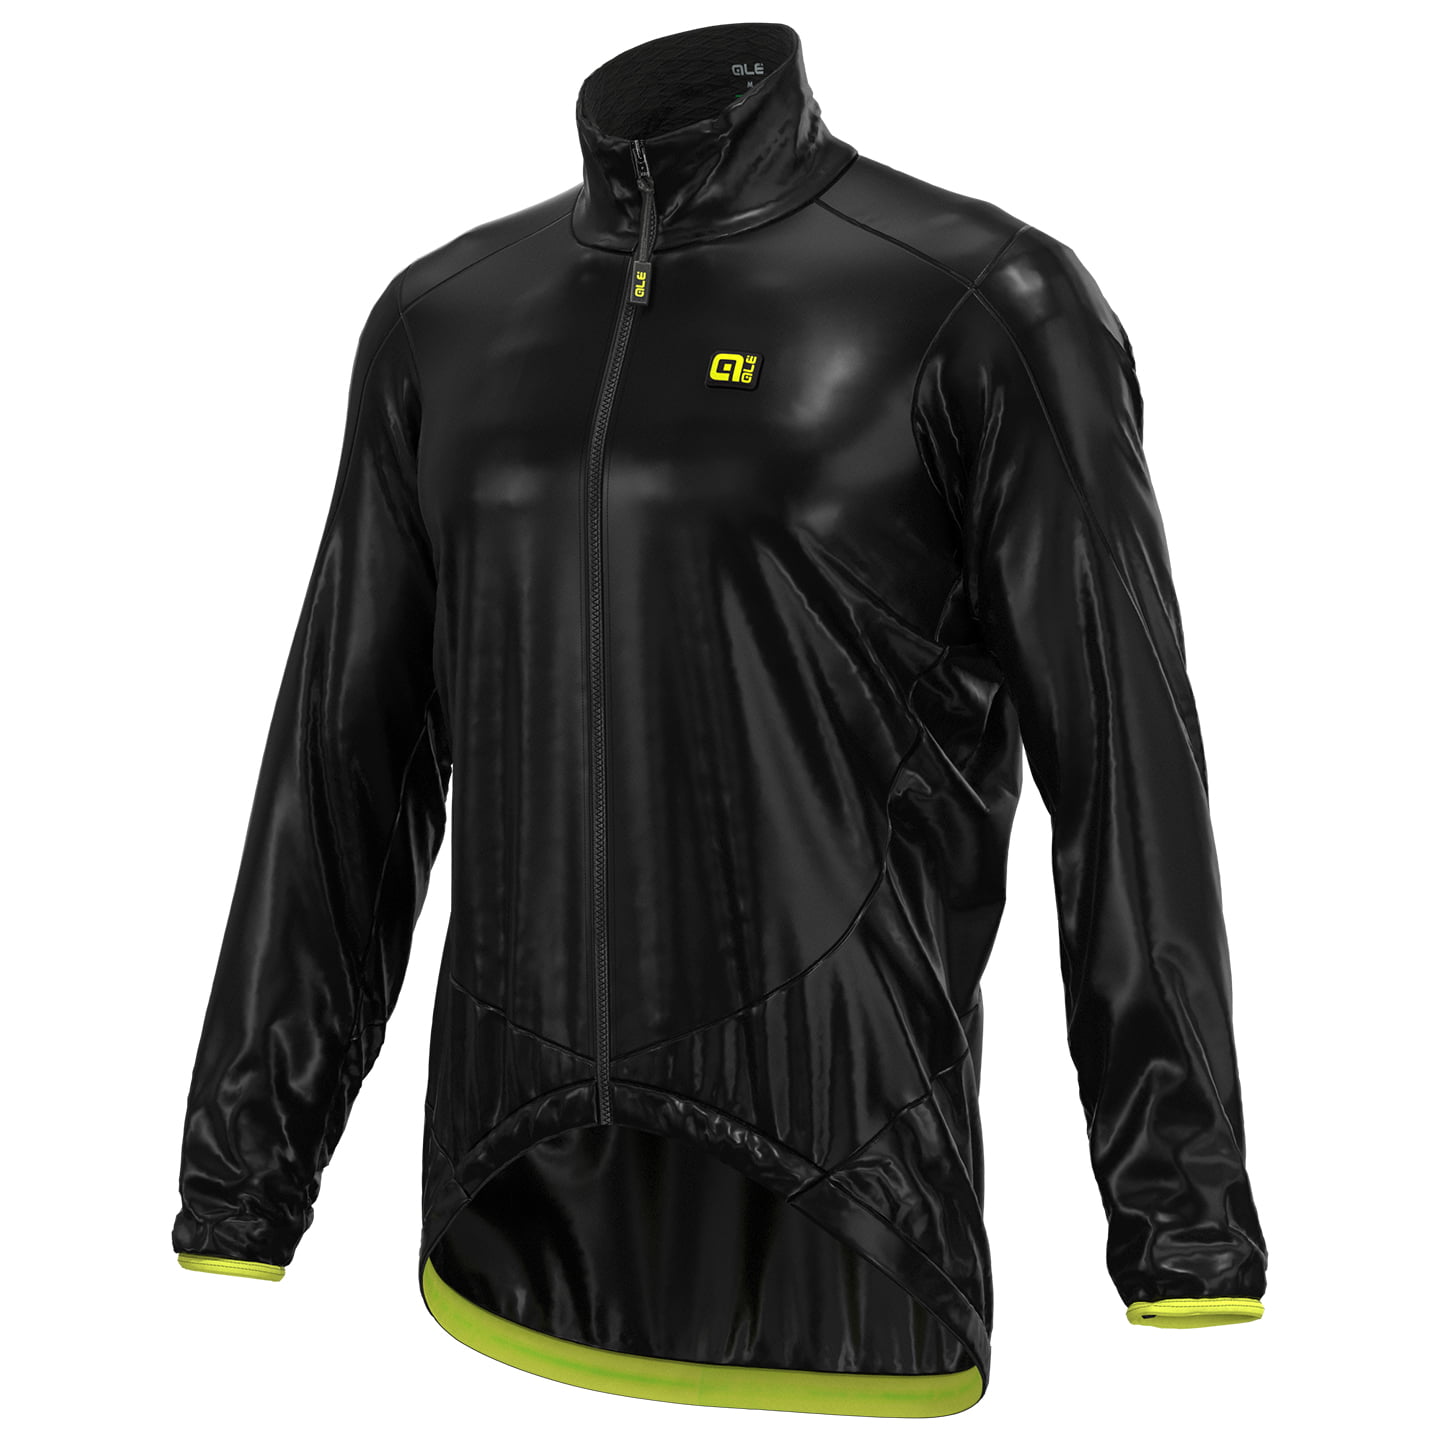 ALE Wind Jacket, size M, Bike jacket, Cycling clothing